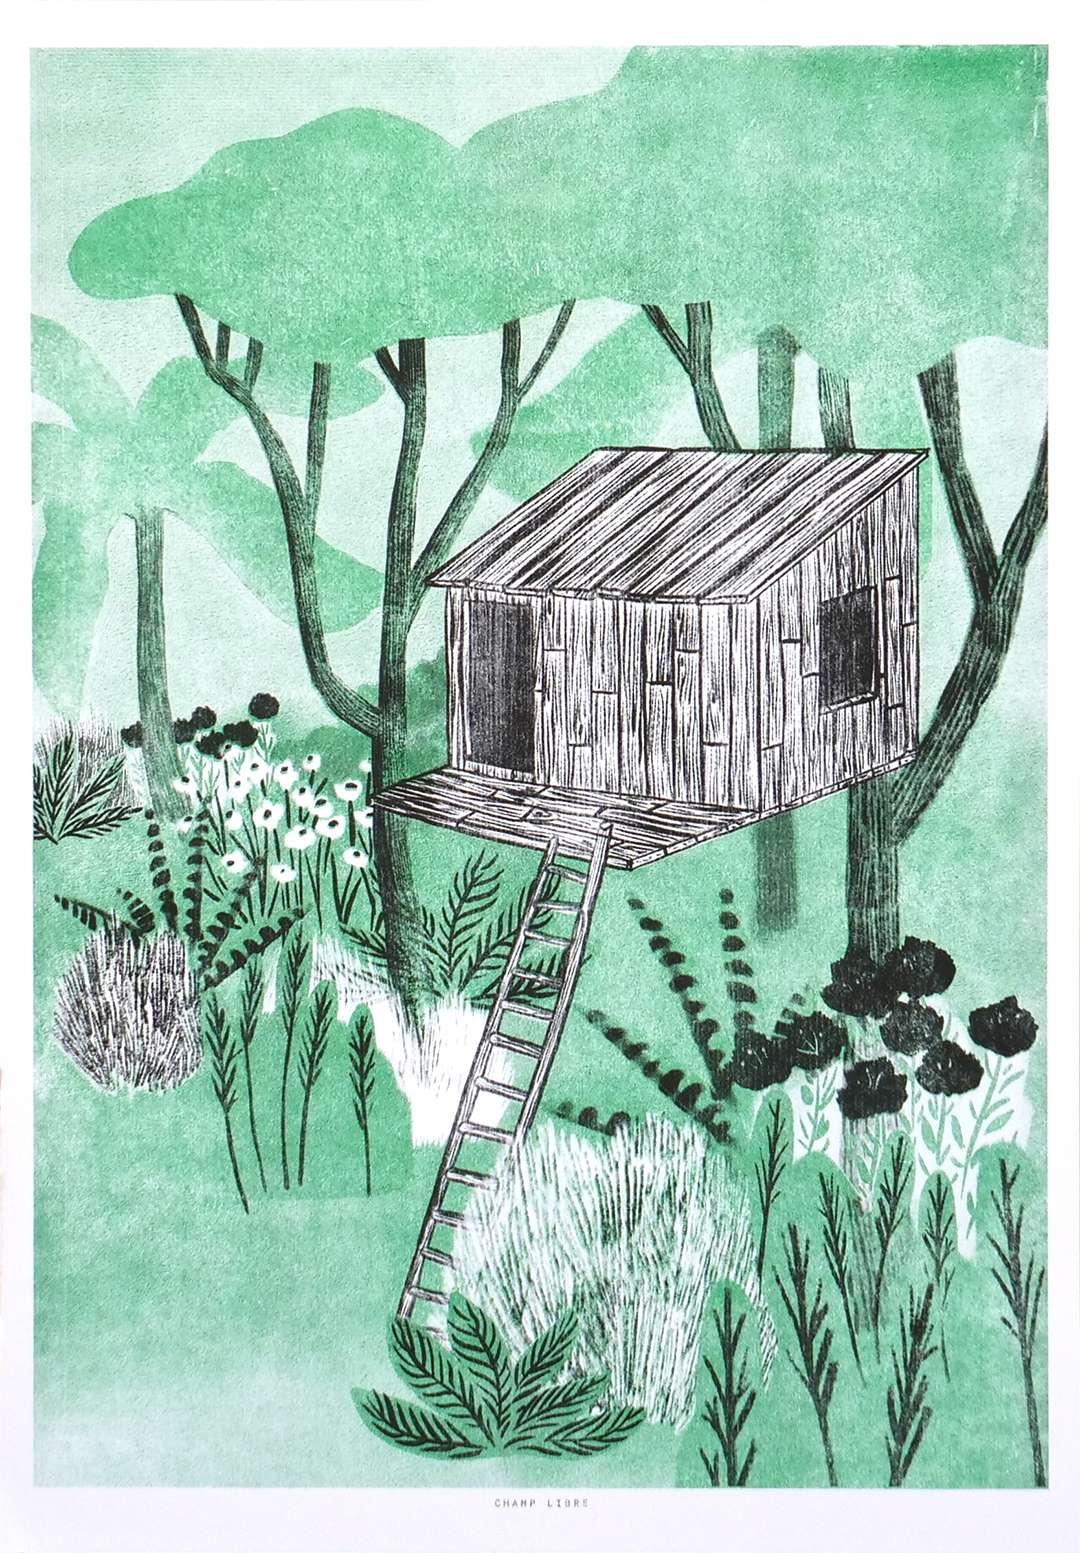 affiche d'edition limitée, illustration d'une cabane perchée. Décoration foret